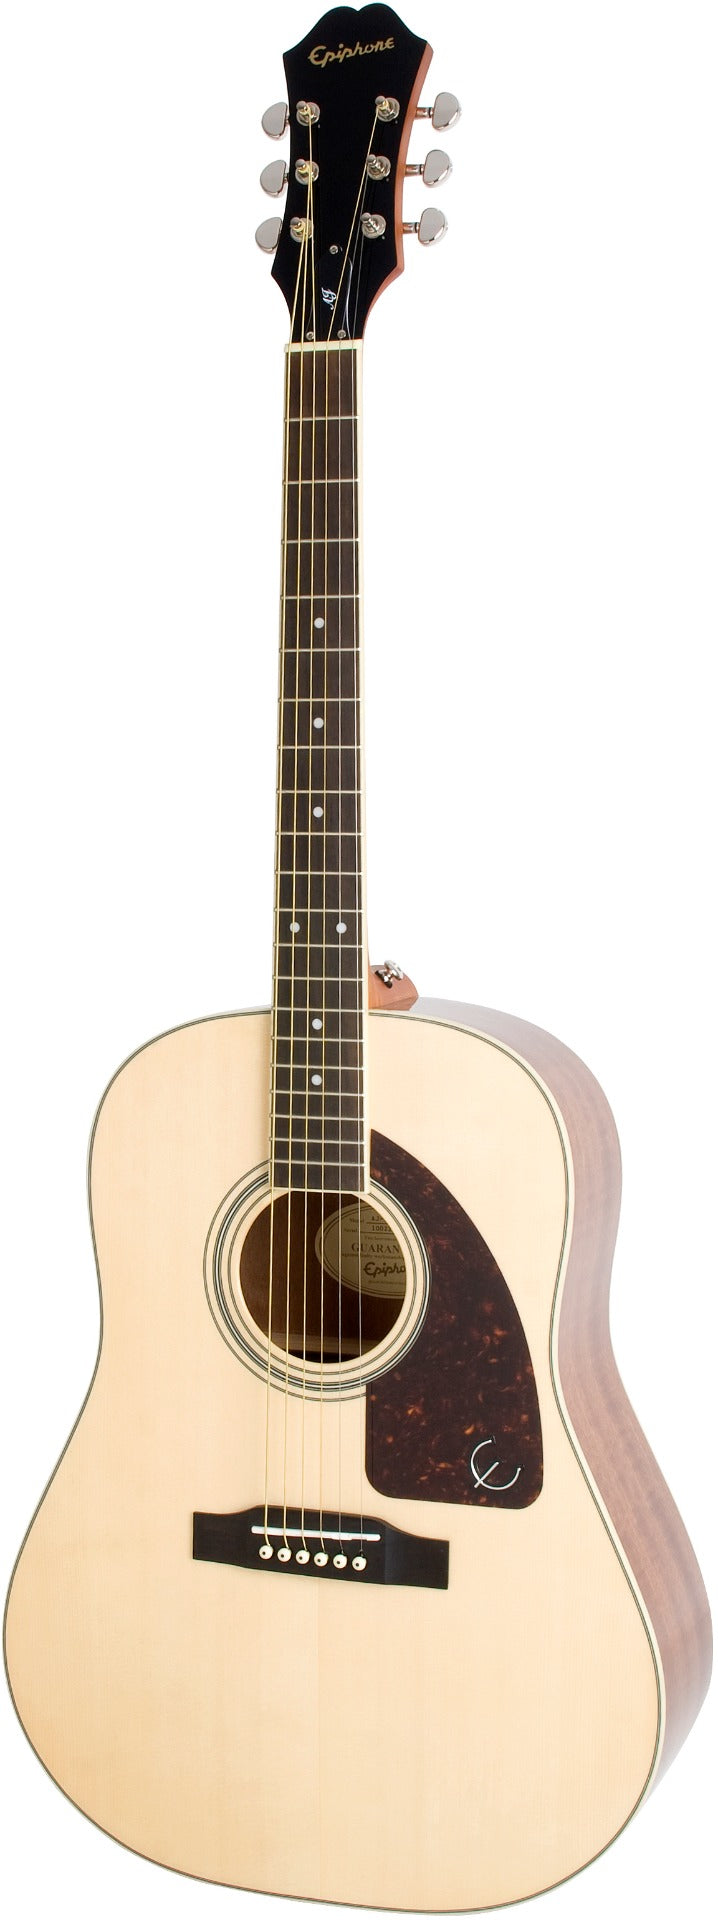 Epiphone J-45 Studio Solid Top Acoustic Guitar, Natural